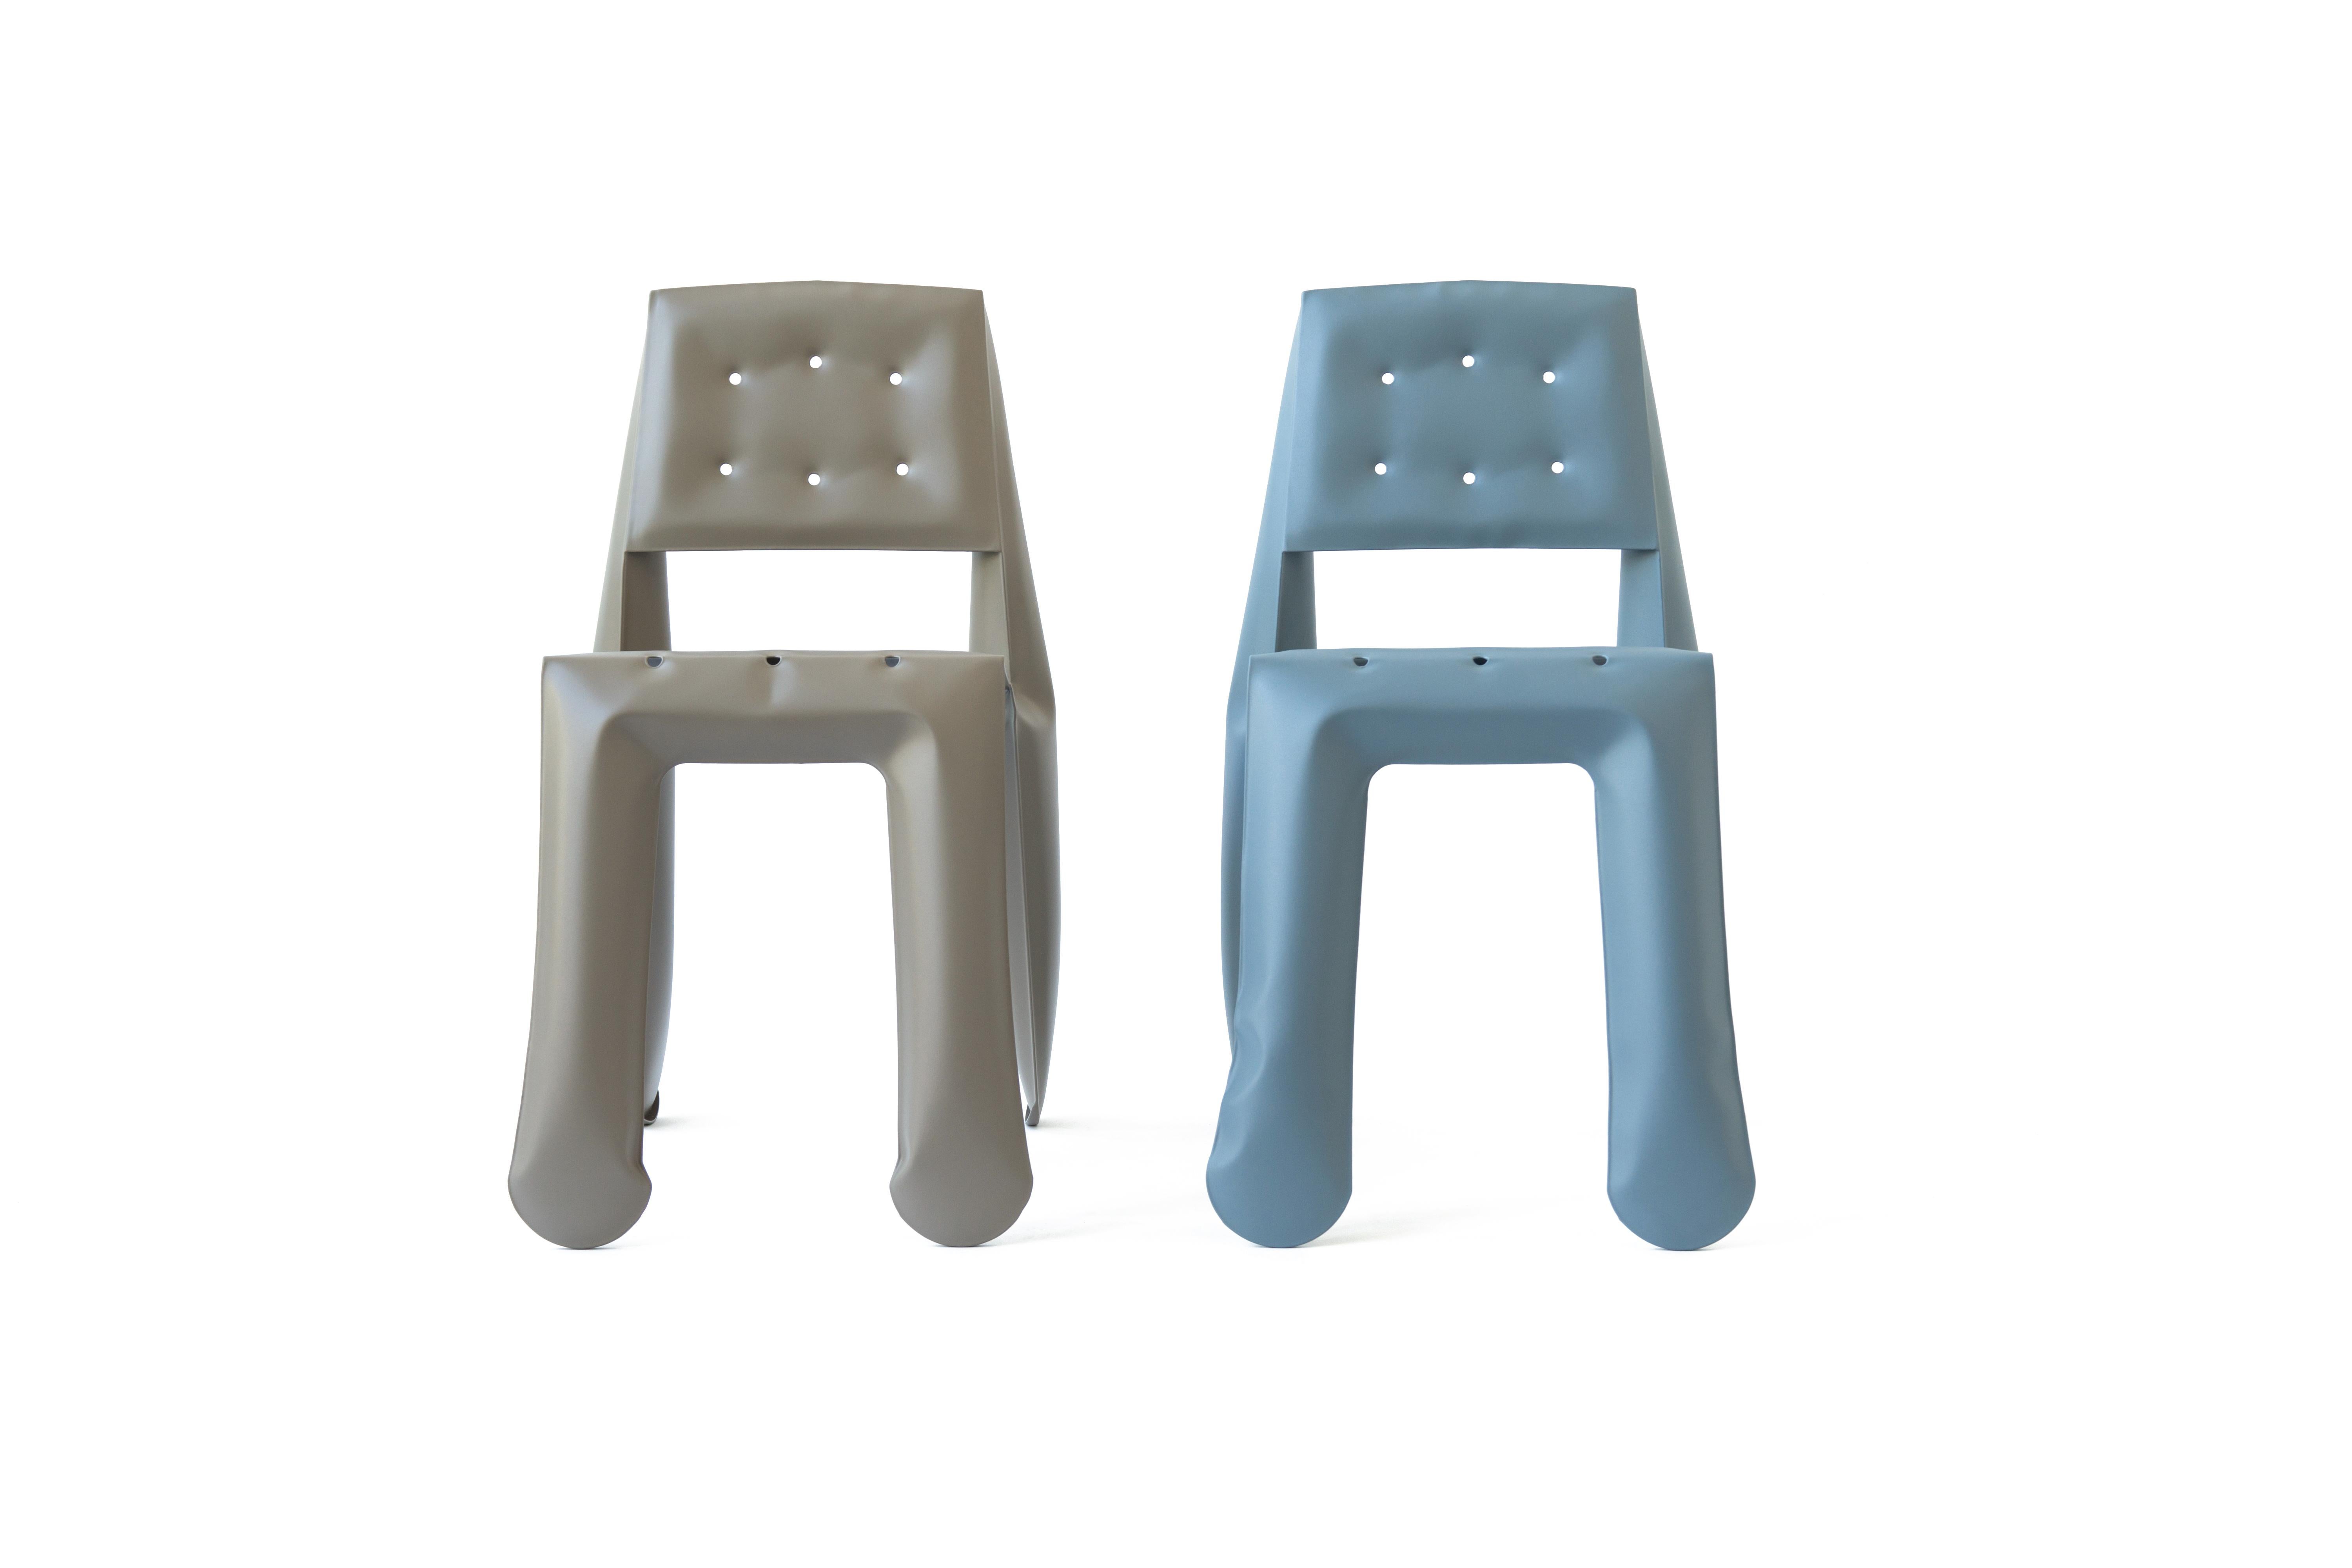 Umbra Grey Carbon Steel Chippensteel 0.5 Sculptural Chair by Zieta For Sale 3